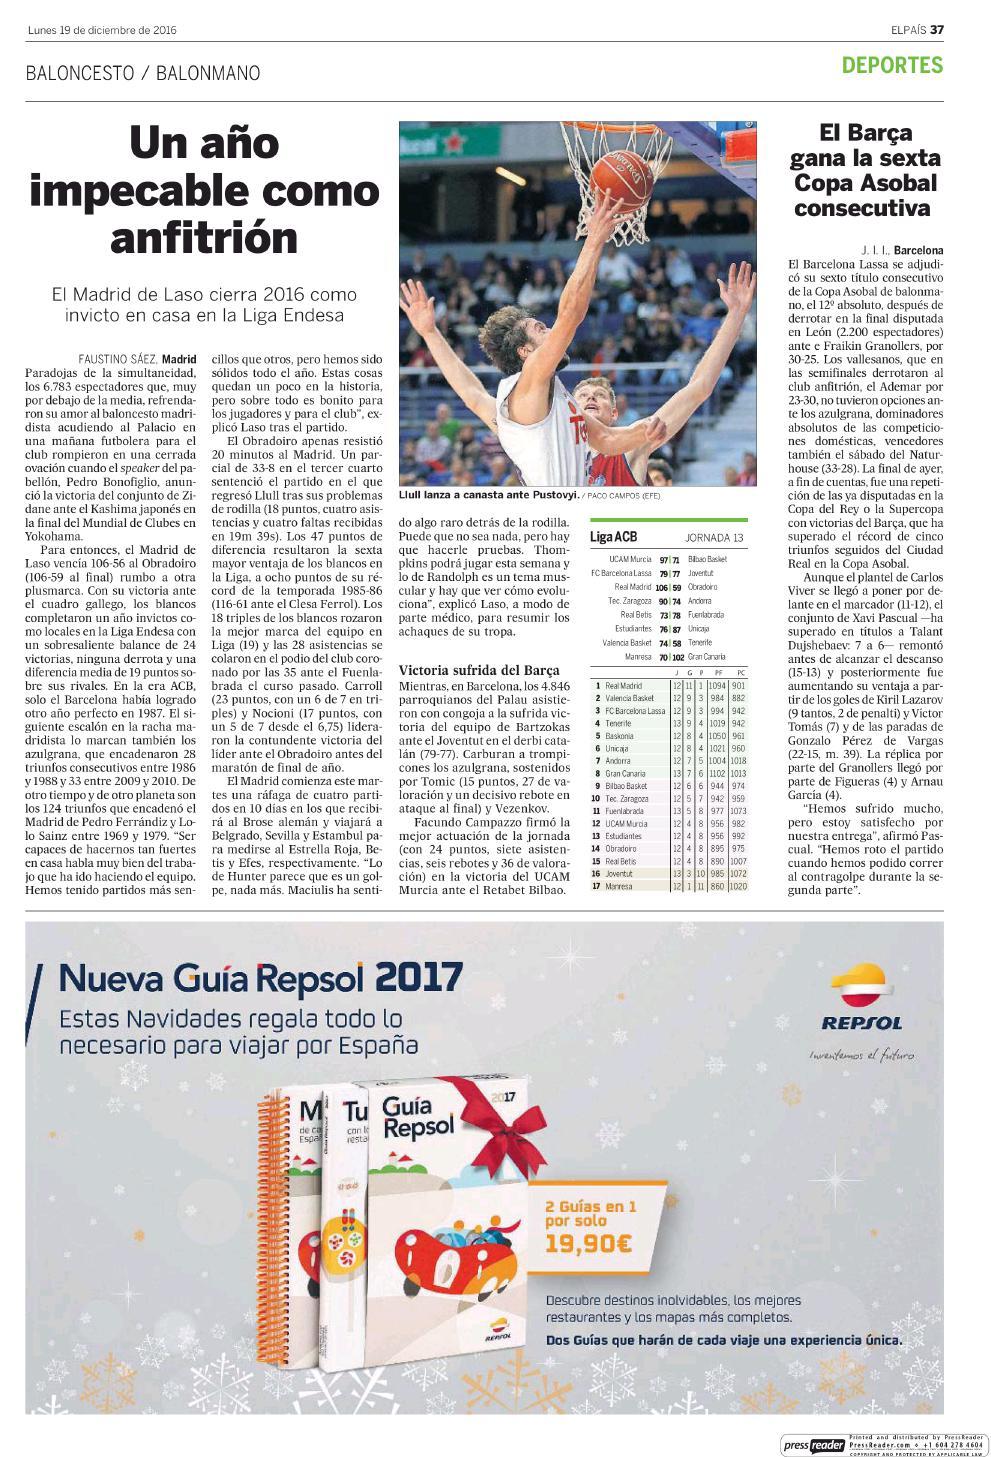 19/12/2016 Kiosko y Más El País 19 dic.